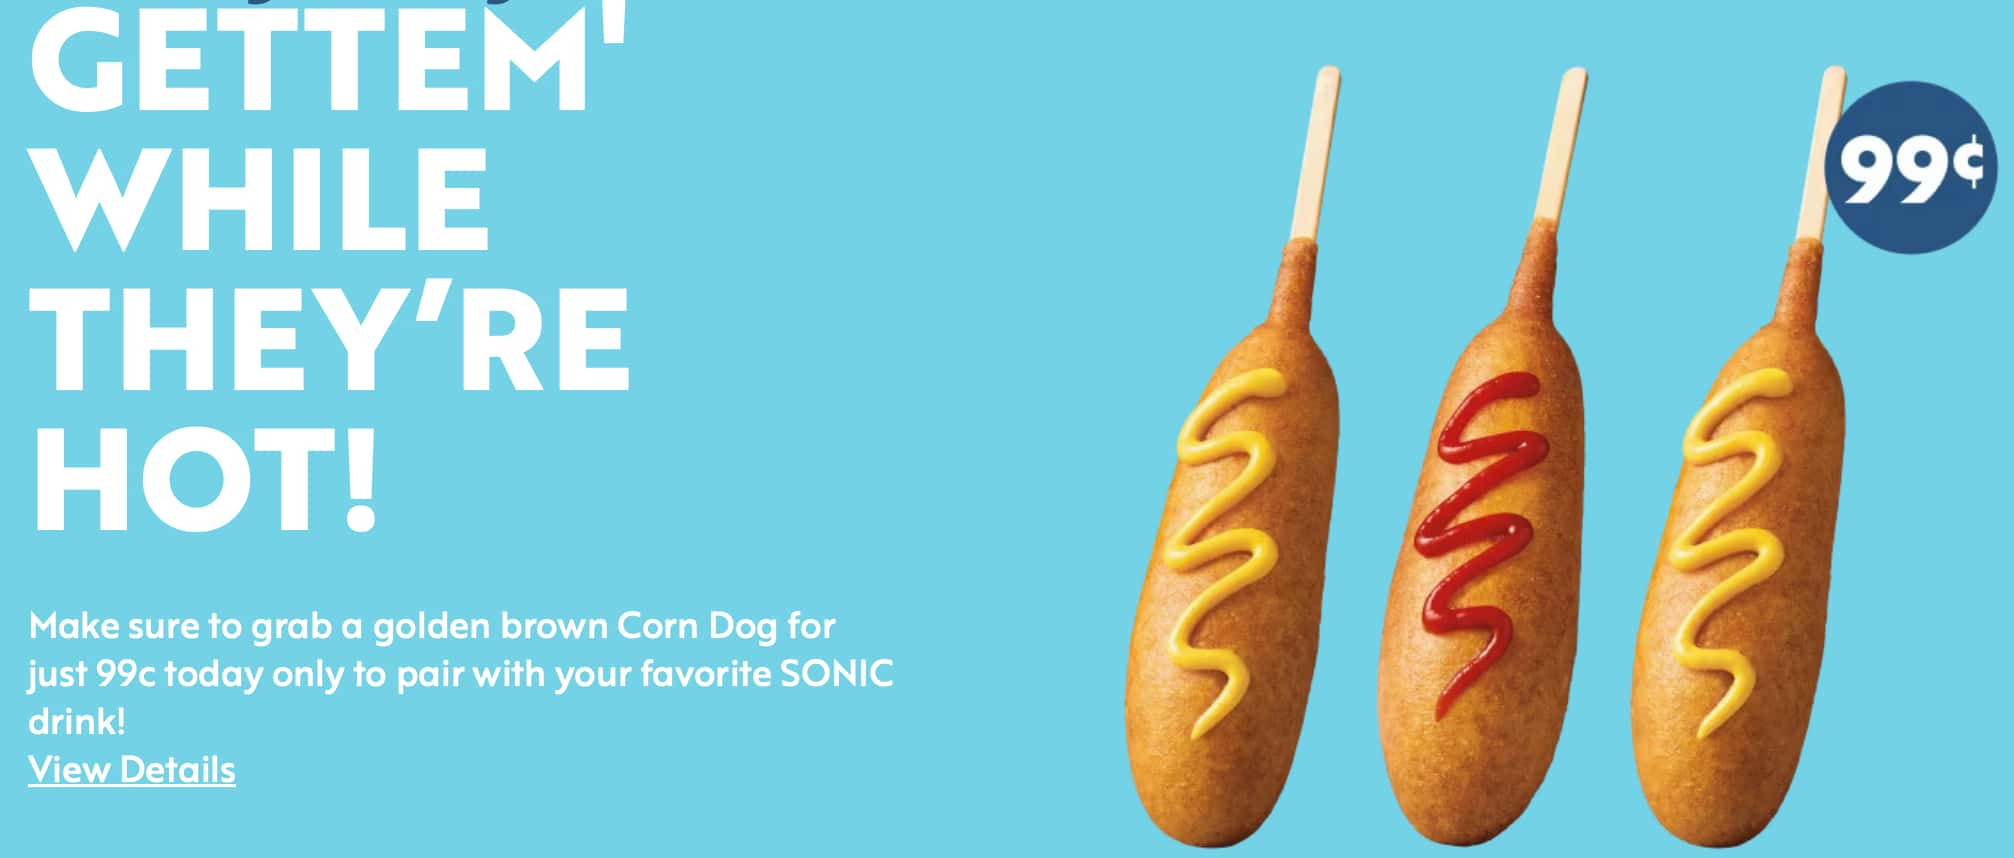 Sonic Corn Dog Days